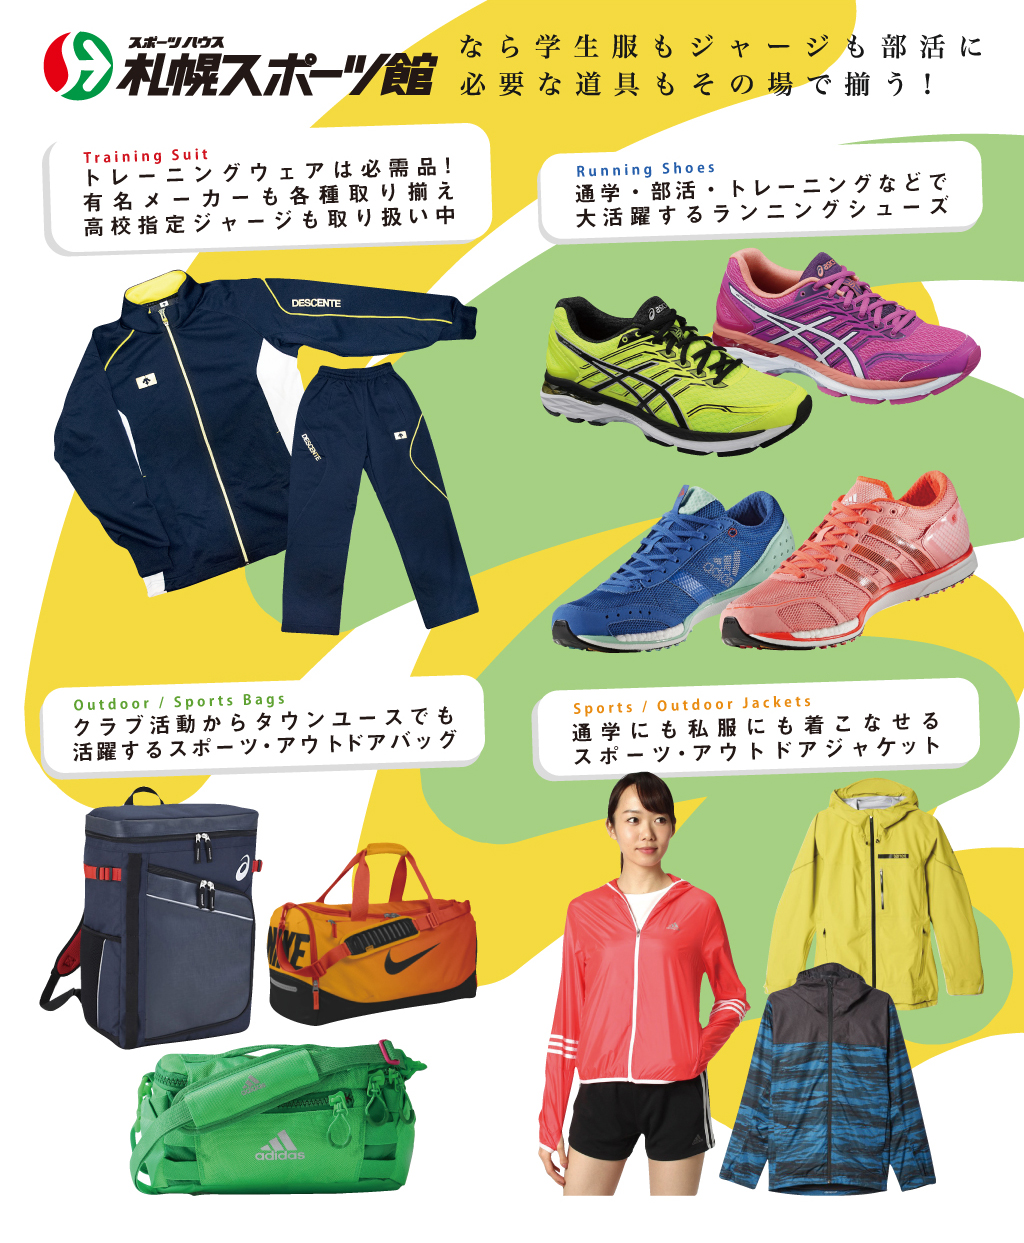 札幌スポーツ館 マルヤマクラス店 学生服販売